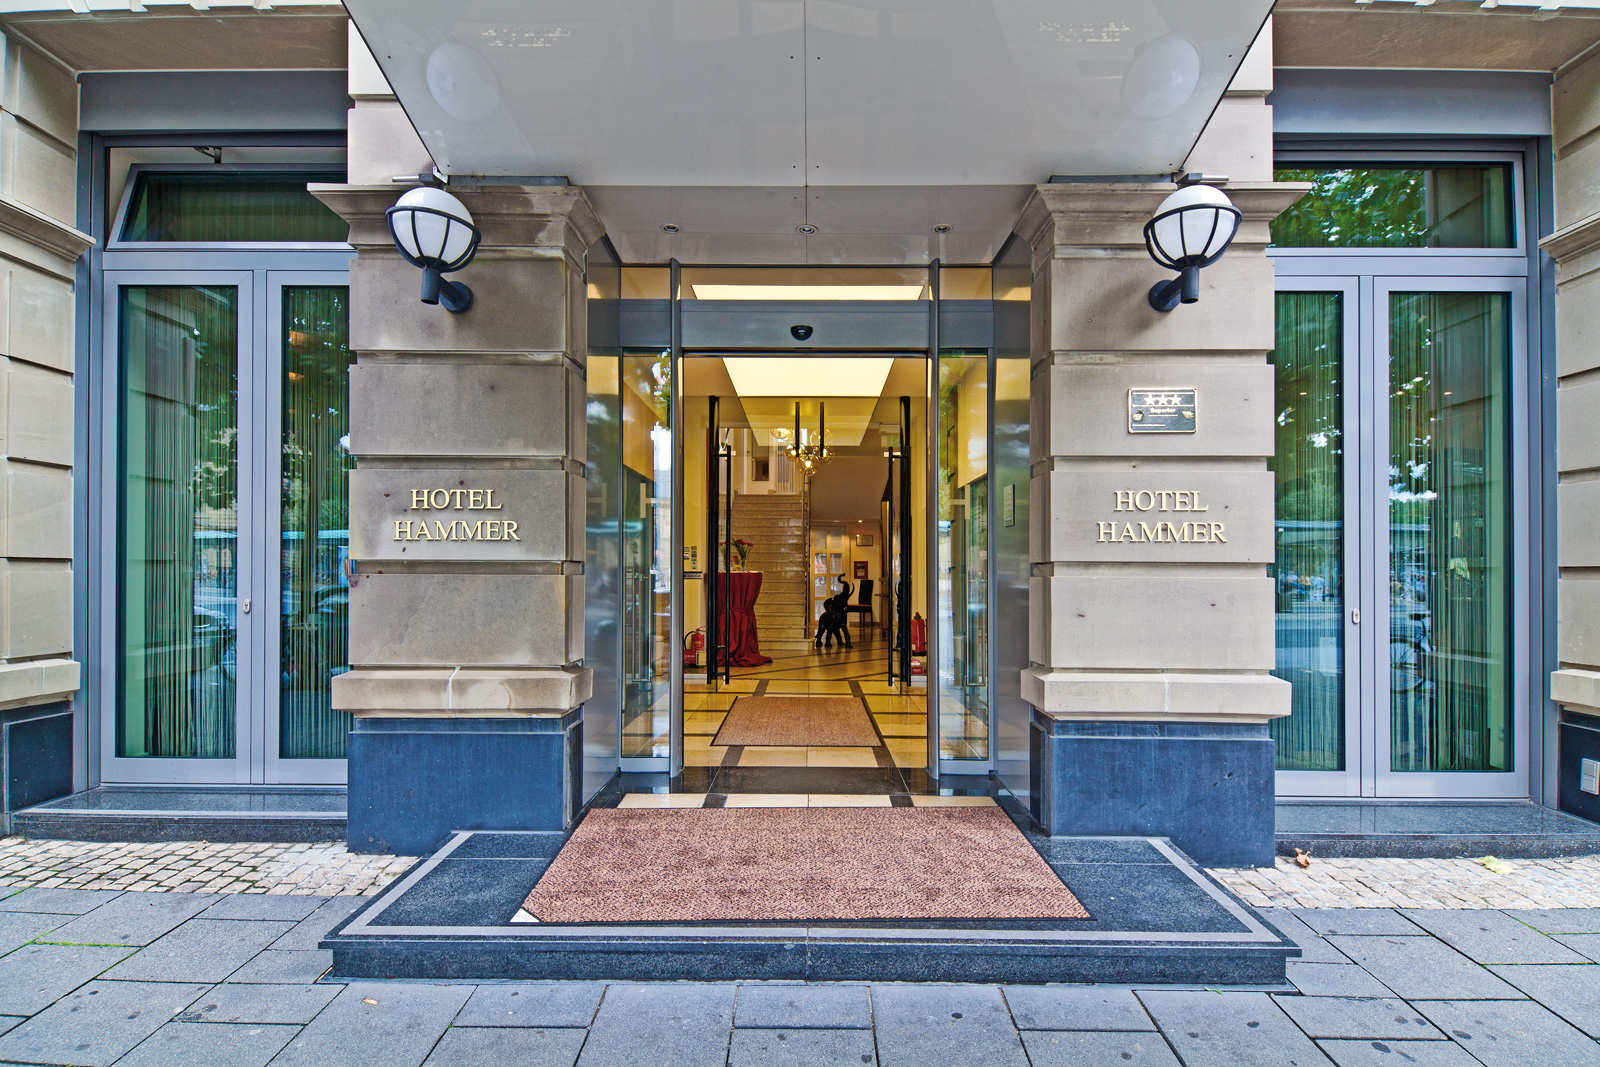 Eingangsbereich im Hotel Hammer, Mainz